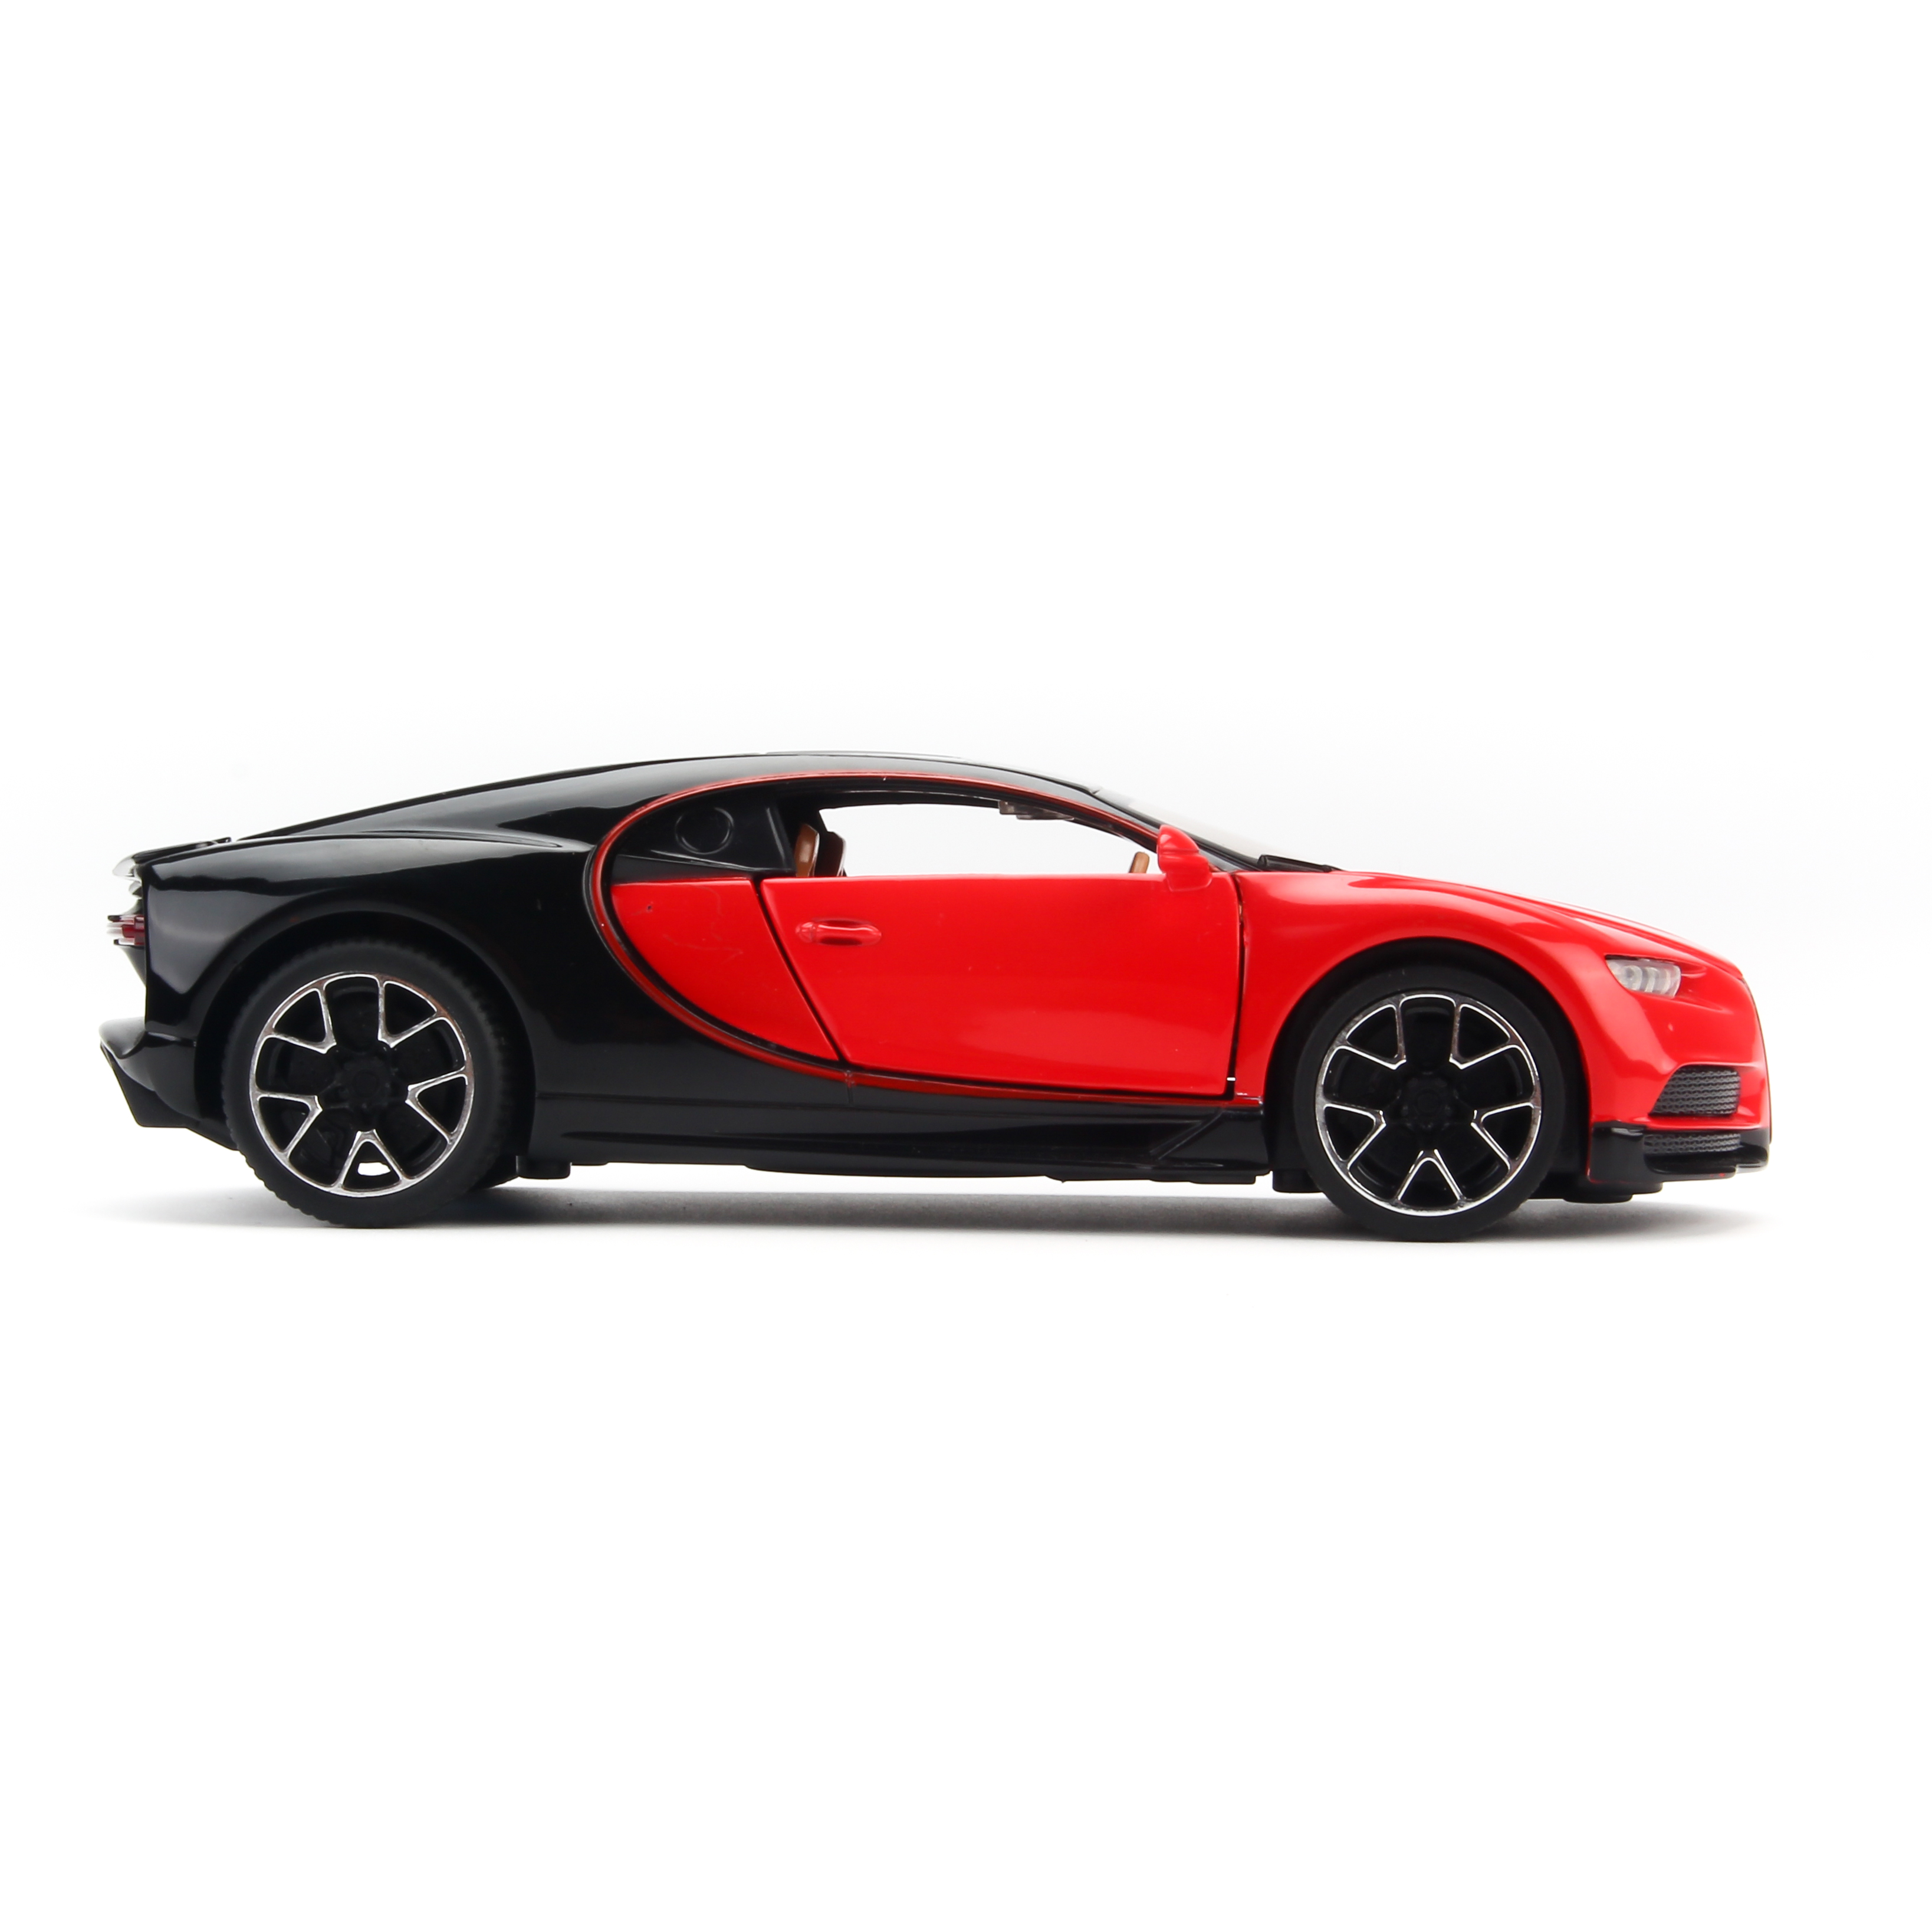 Mô hình xe Bugatti Chiron 2015 1:32 Miniauto - 3225A